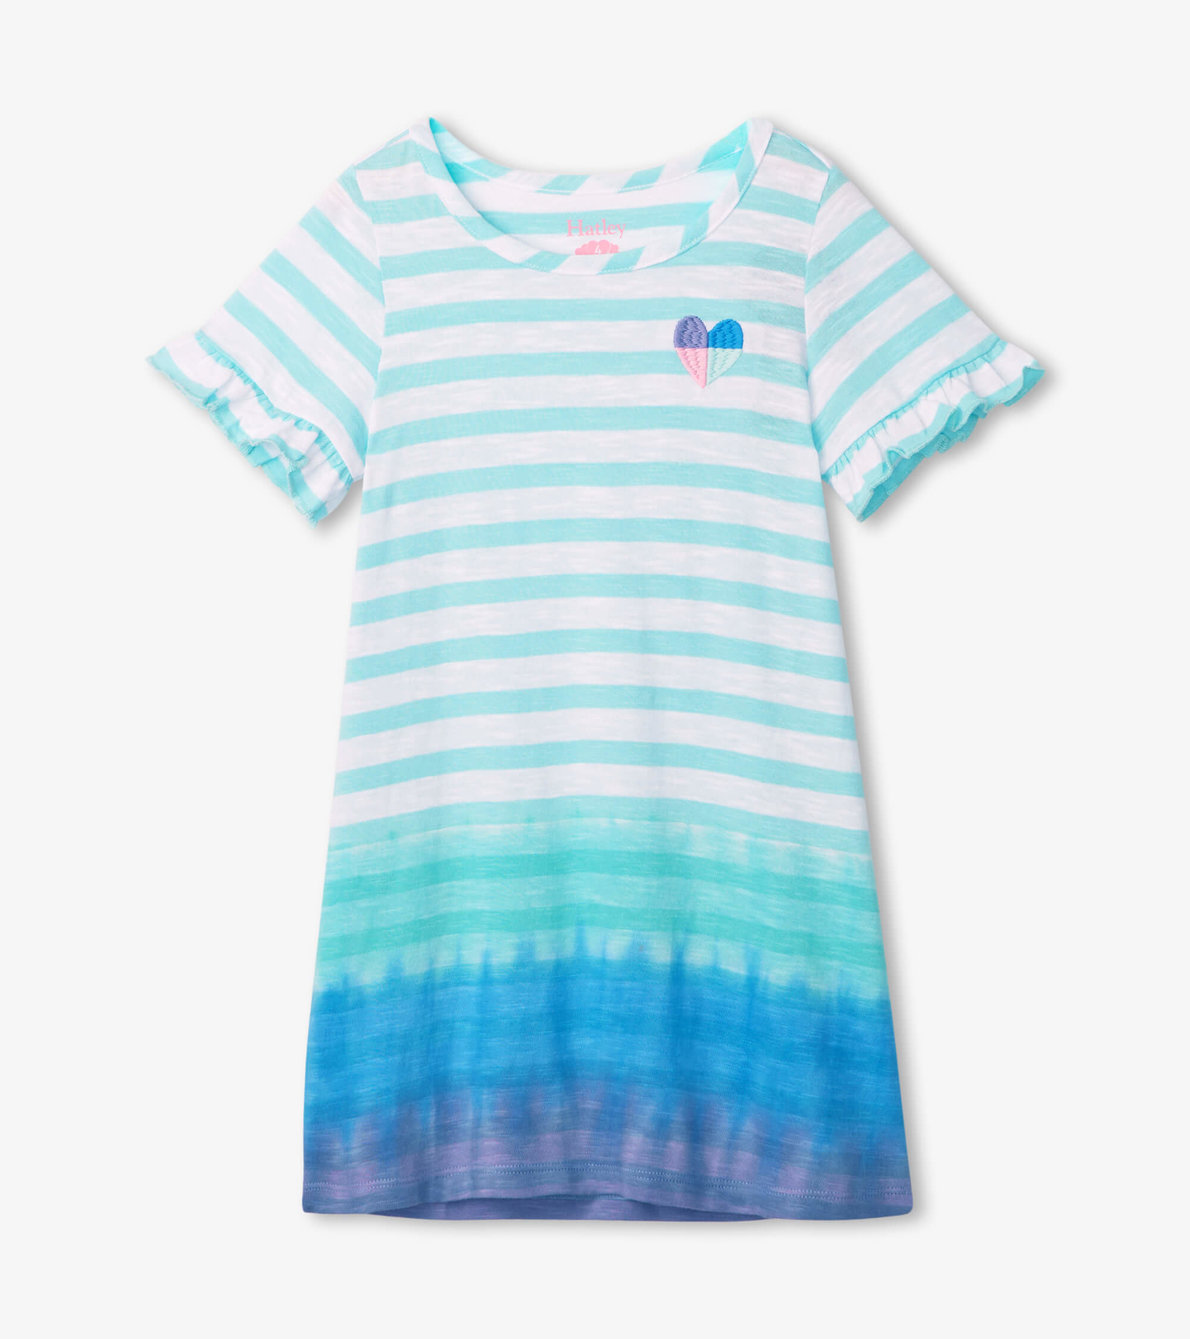 View larger image of Coastal Dip Dye Tee Shirt Dress